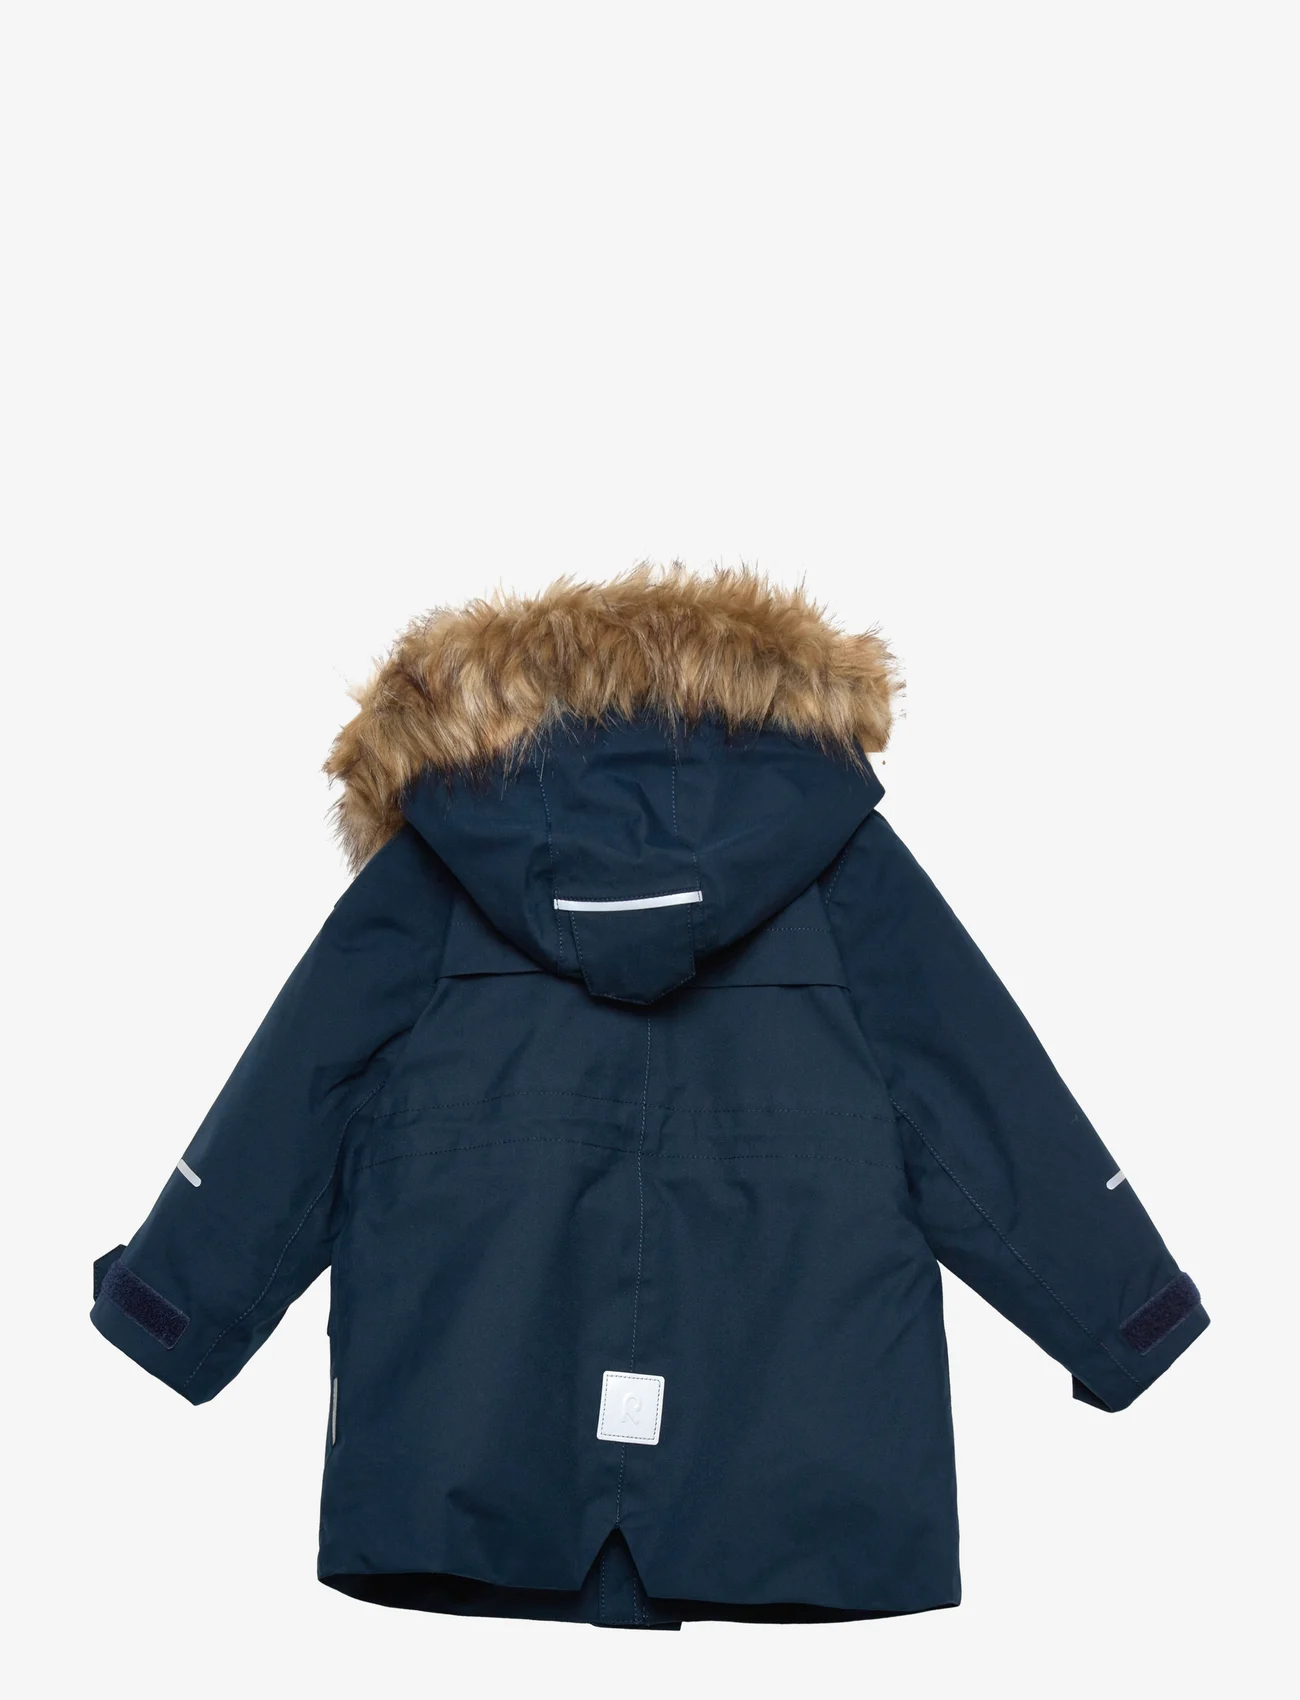 Reima - Reimatec winter jacket, Mutka - parkas - navy - 1